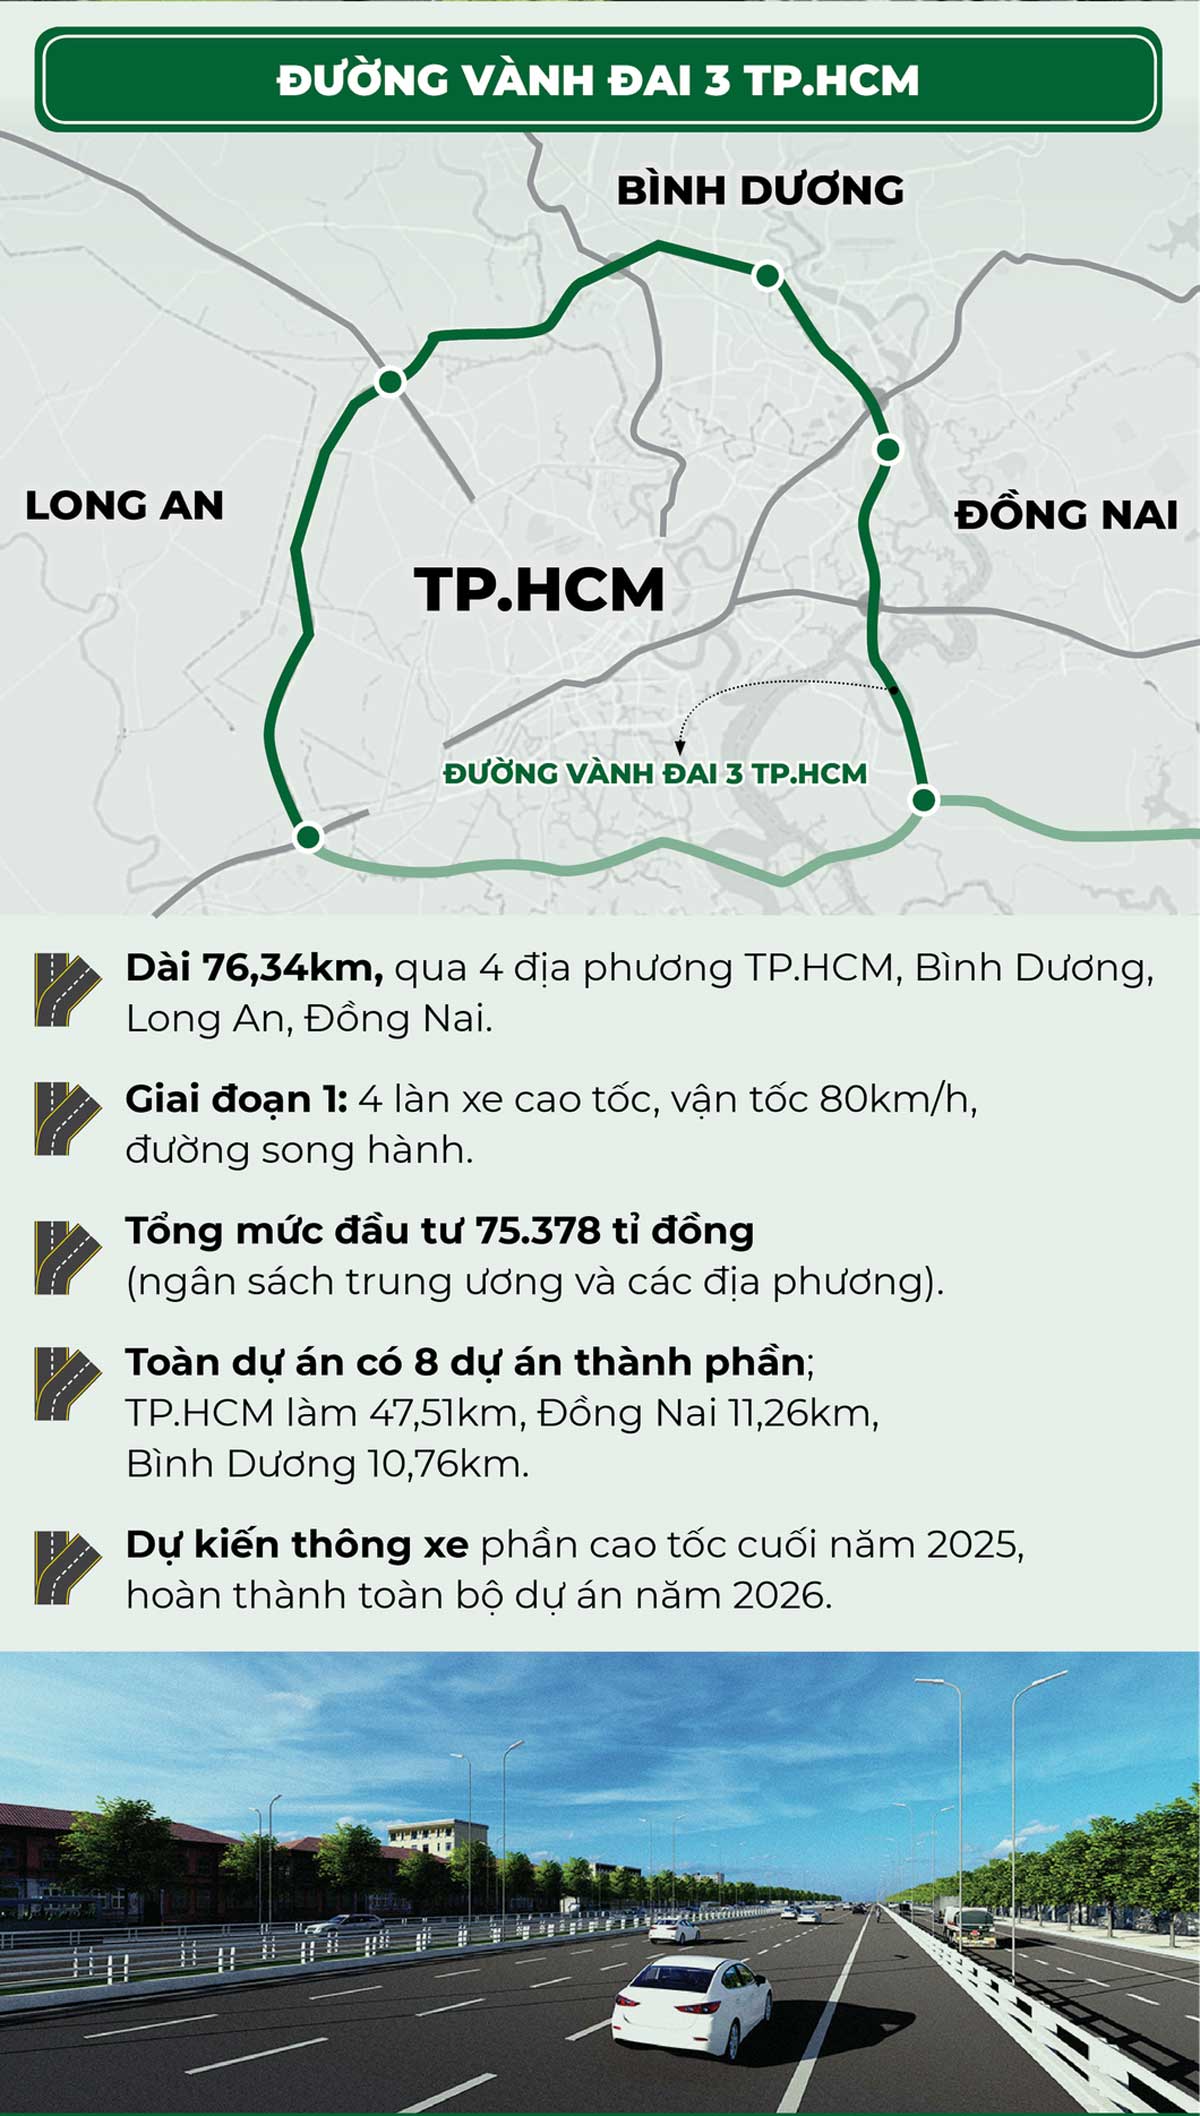 Thong tin Duong Vanh Dai 3 TPHCM 2023 - Đường Vành Đai 3 Tp.HCM | Cập nhật mới nhất 2023